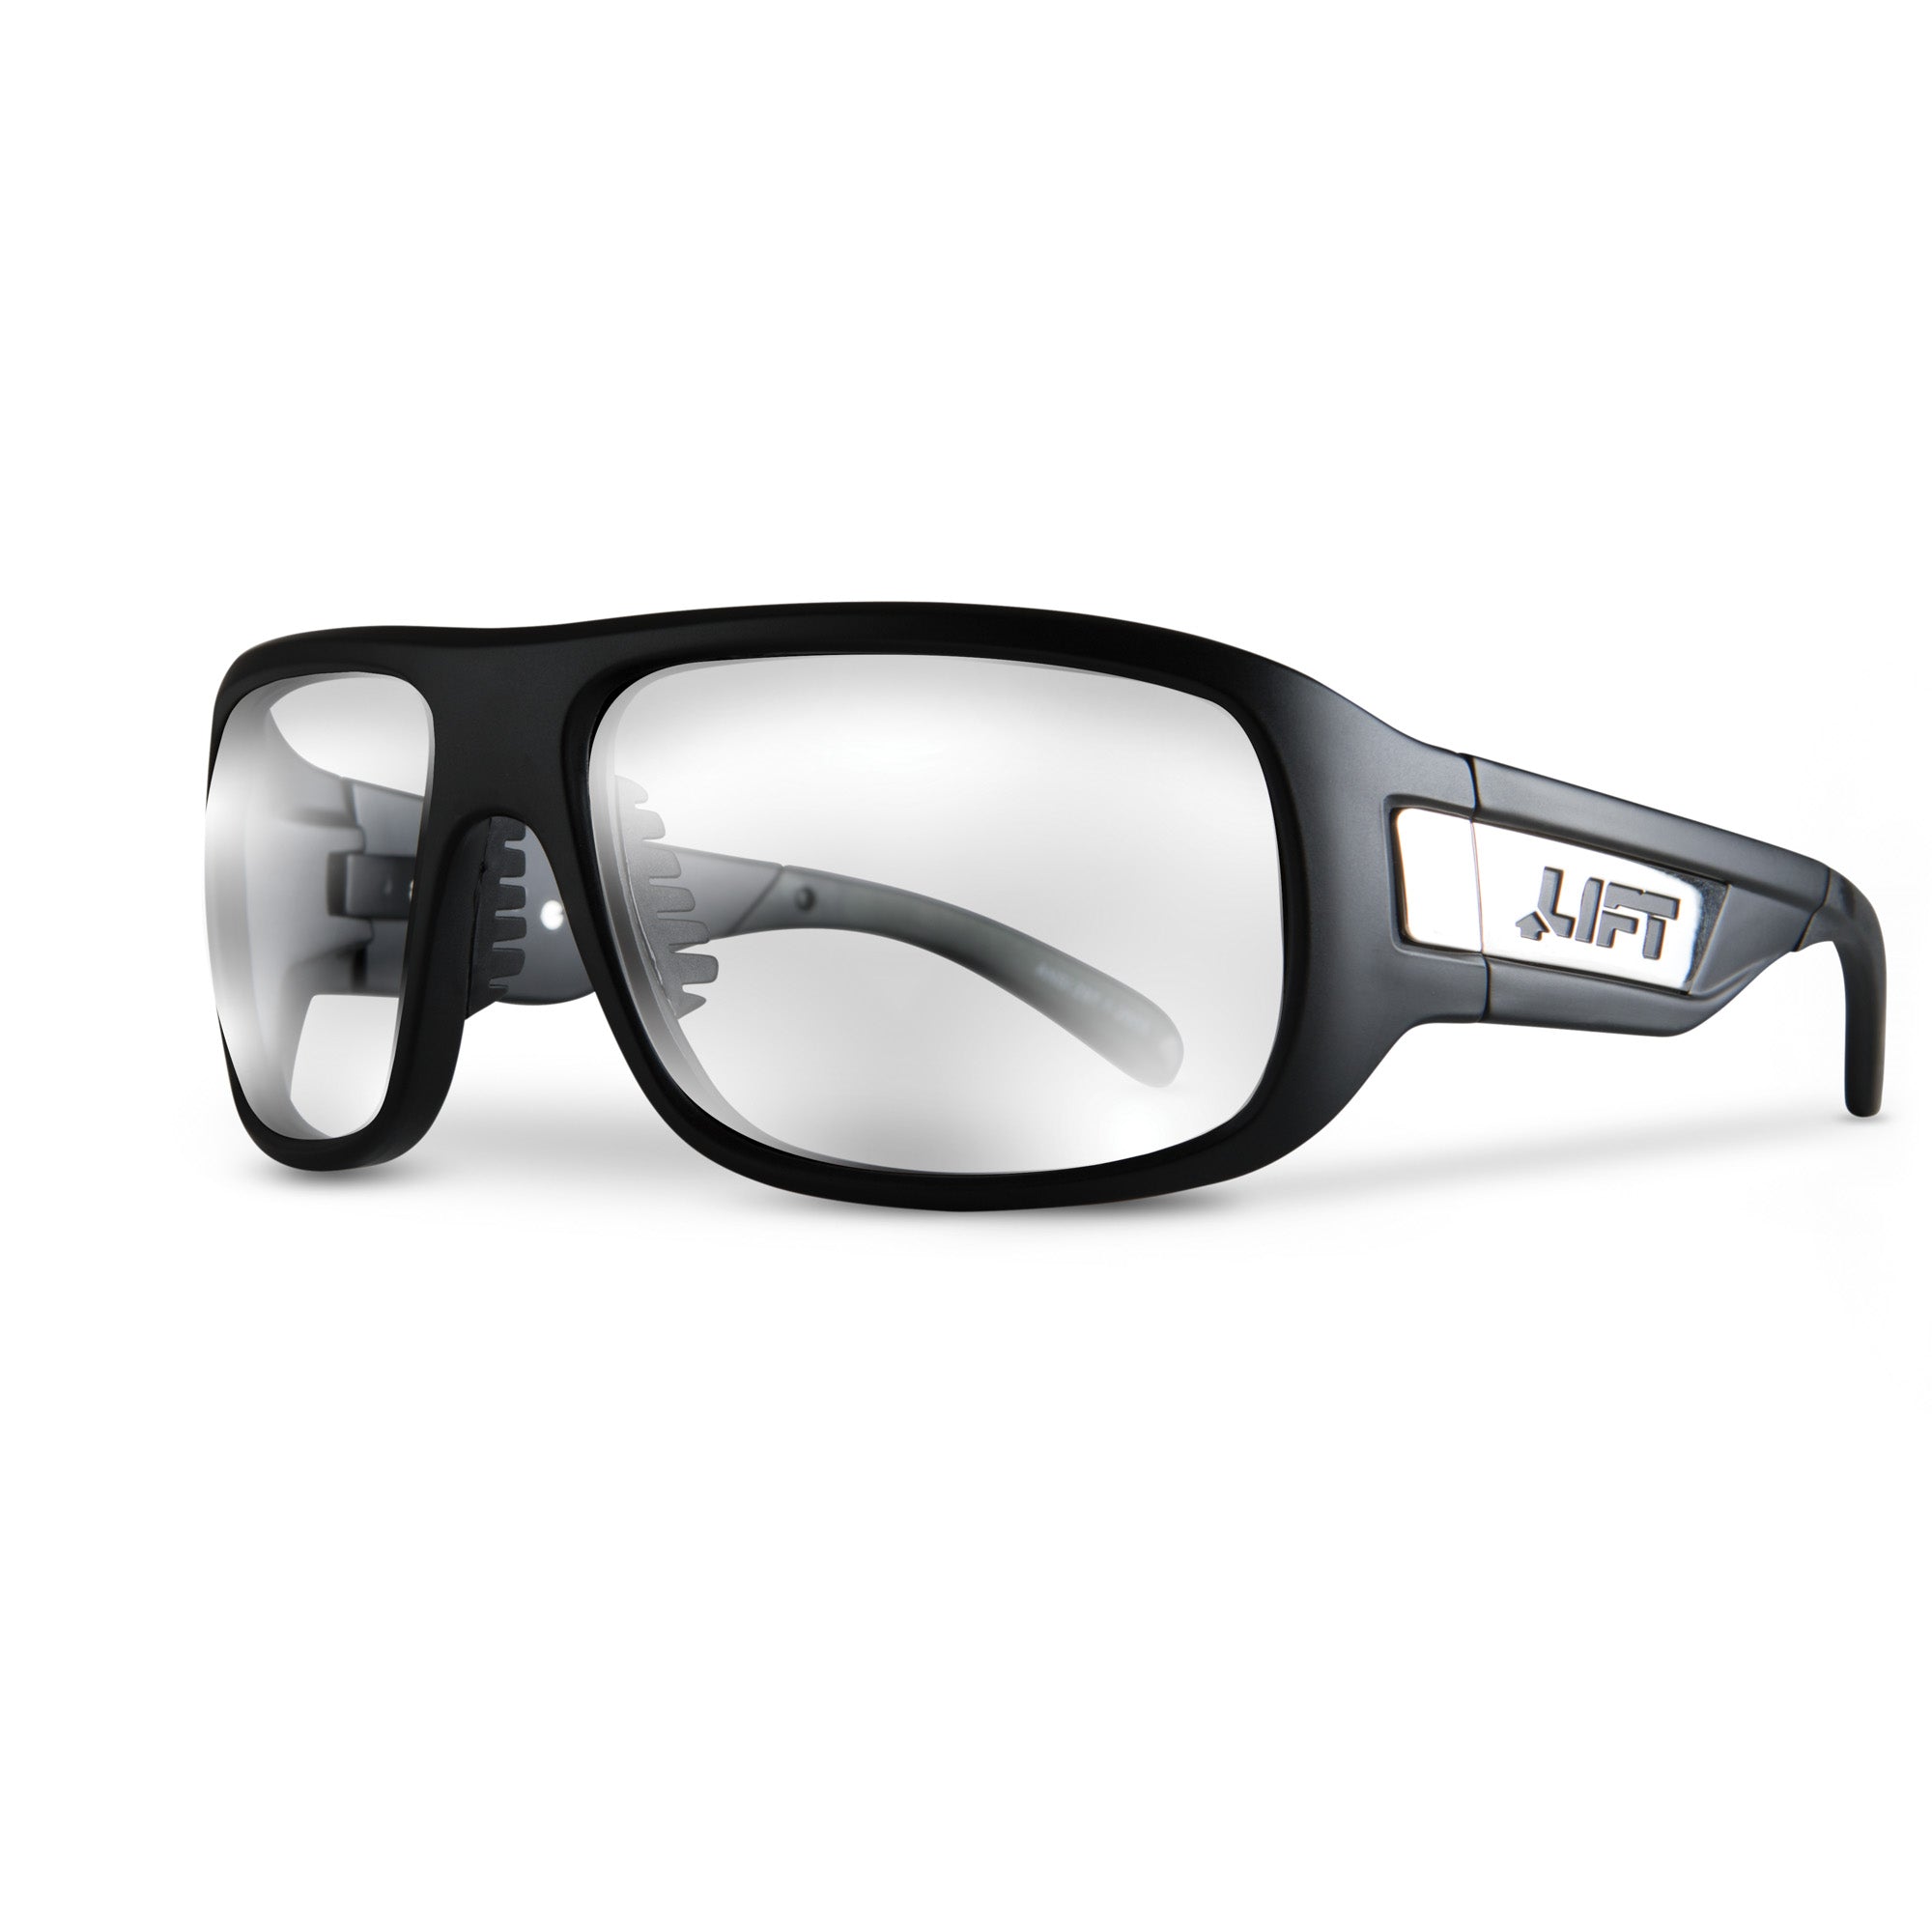 LIFT Safety - BOLD Safety Glasses - Matte Black